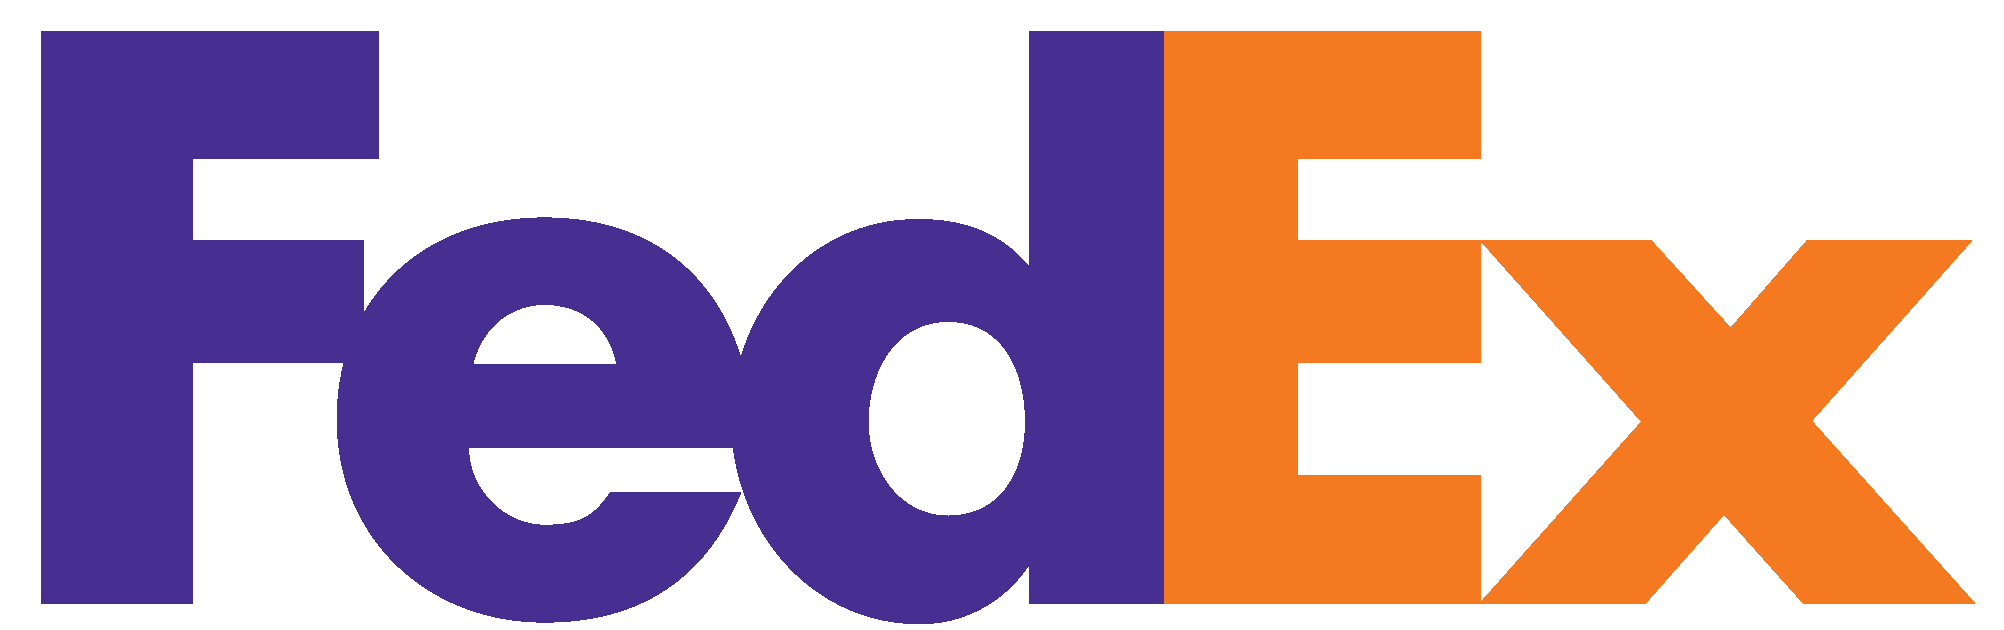 FedEx-Logo-HD